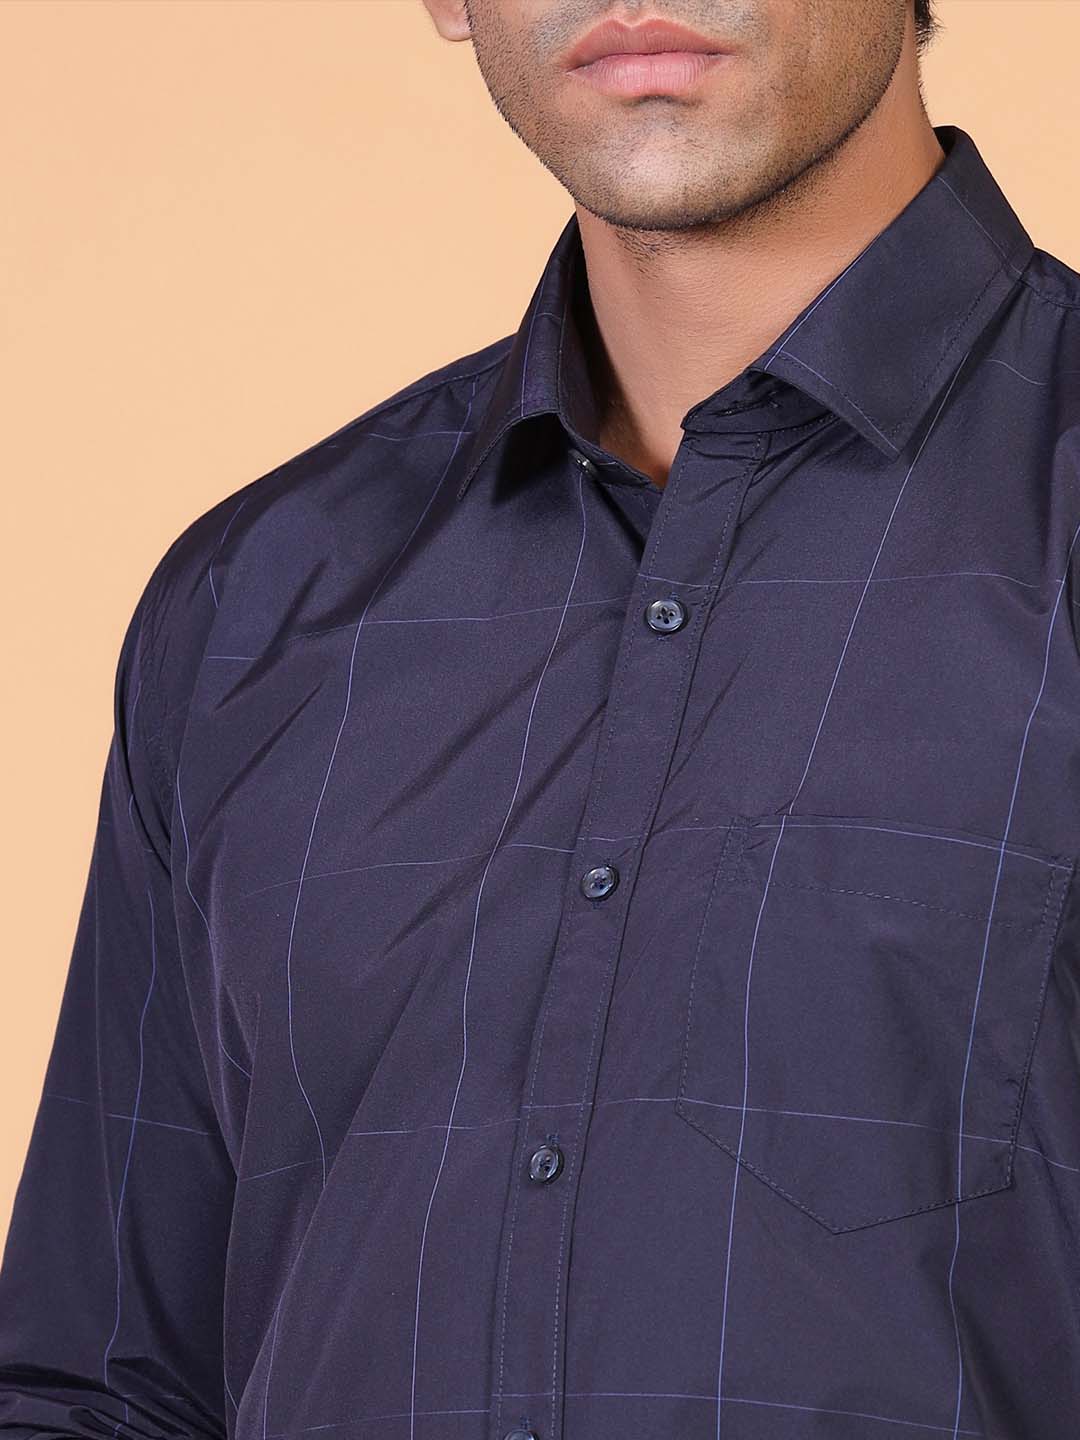 navy blue check shirt